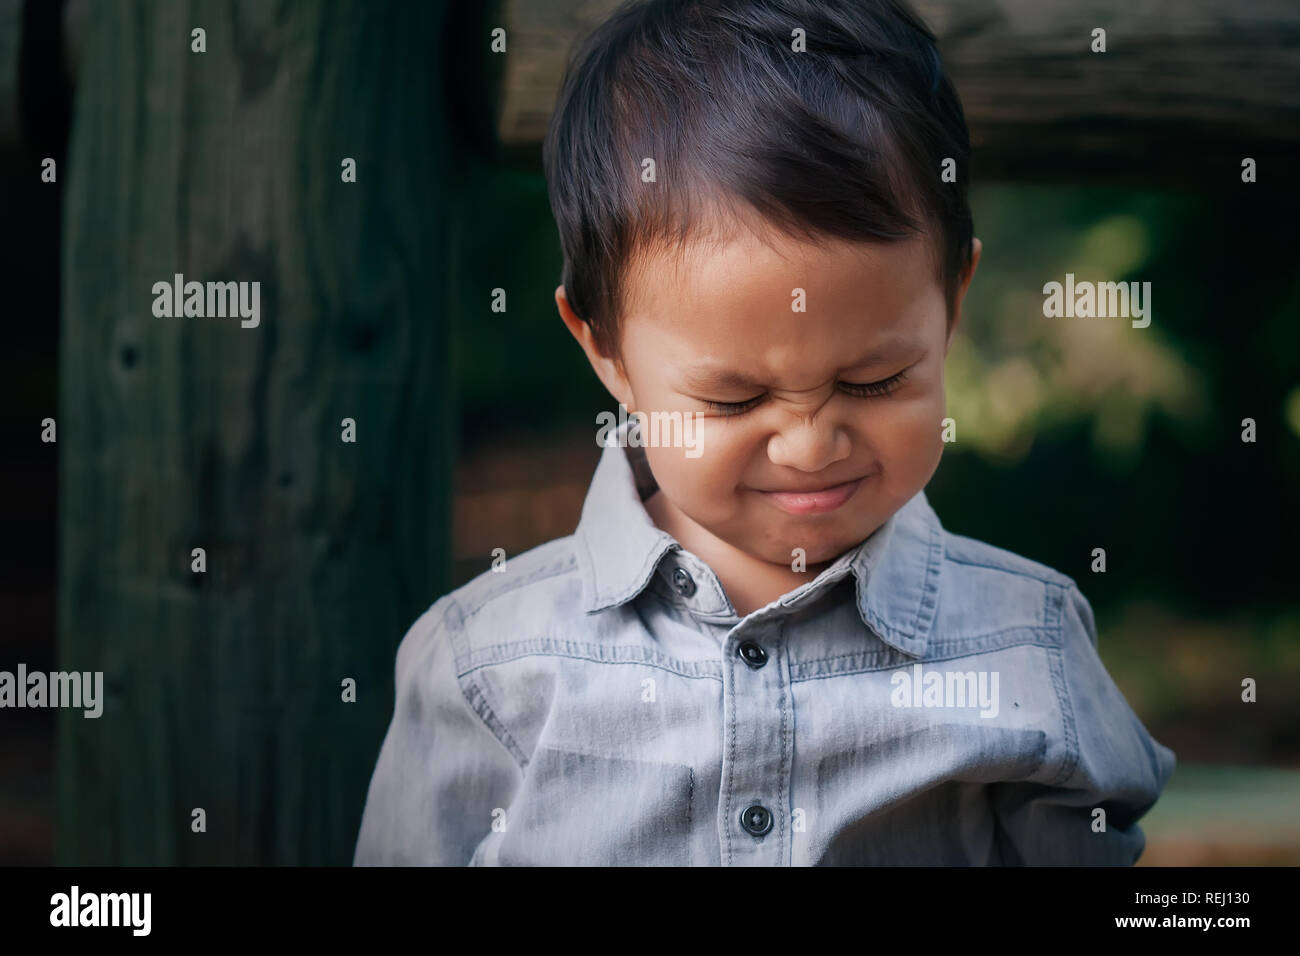 Ein kleiner Junge zu weinen oder werfen einen Wutanfall mit einem runzelte die Stirn, Gesicht, mit emotionalen Stress verbunden. Stockfoto